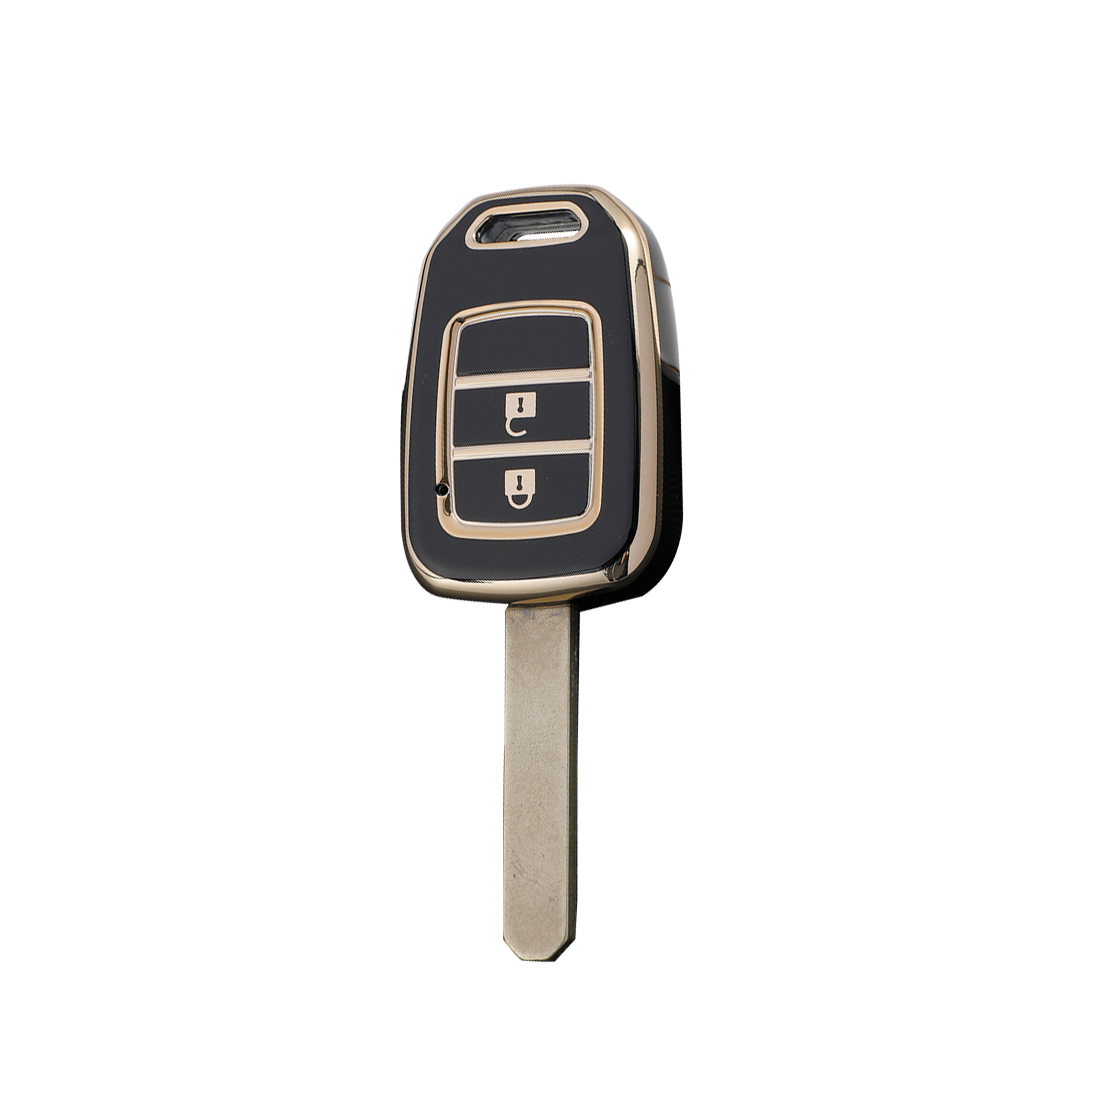 Acto TPU Gold Series Car Key Cover For Honda Mobilio